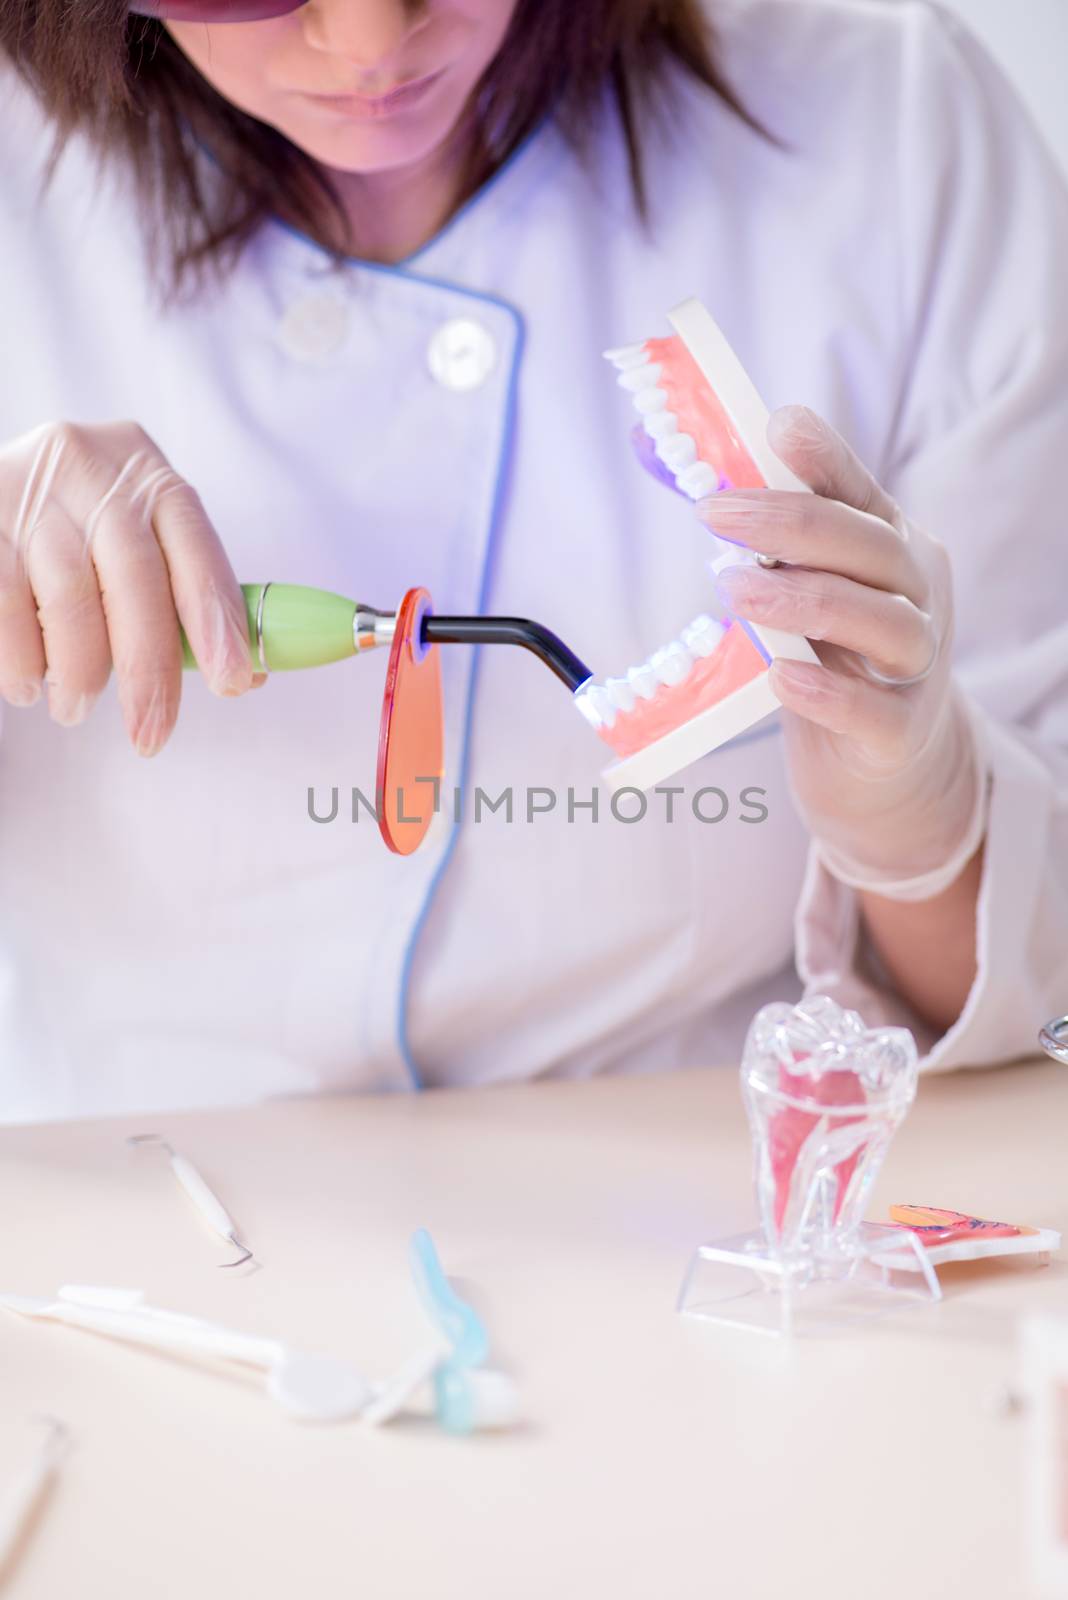 Woman dentist working on teeth implant by Elnur